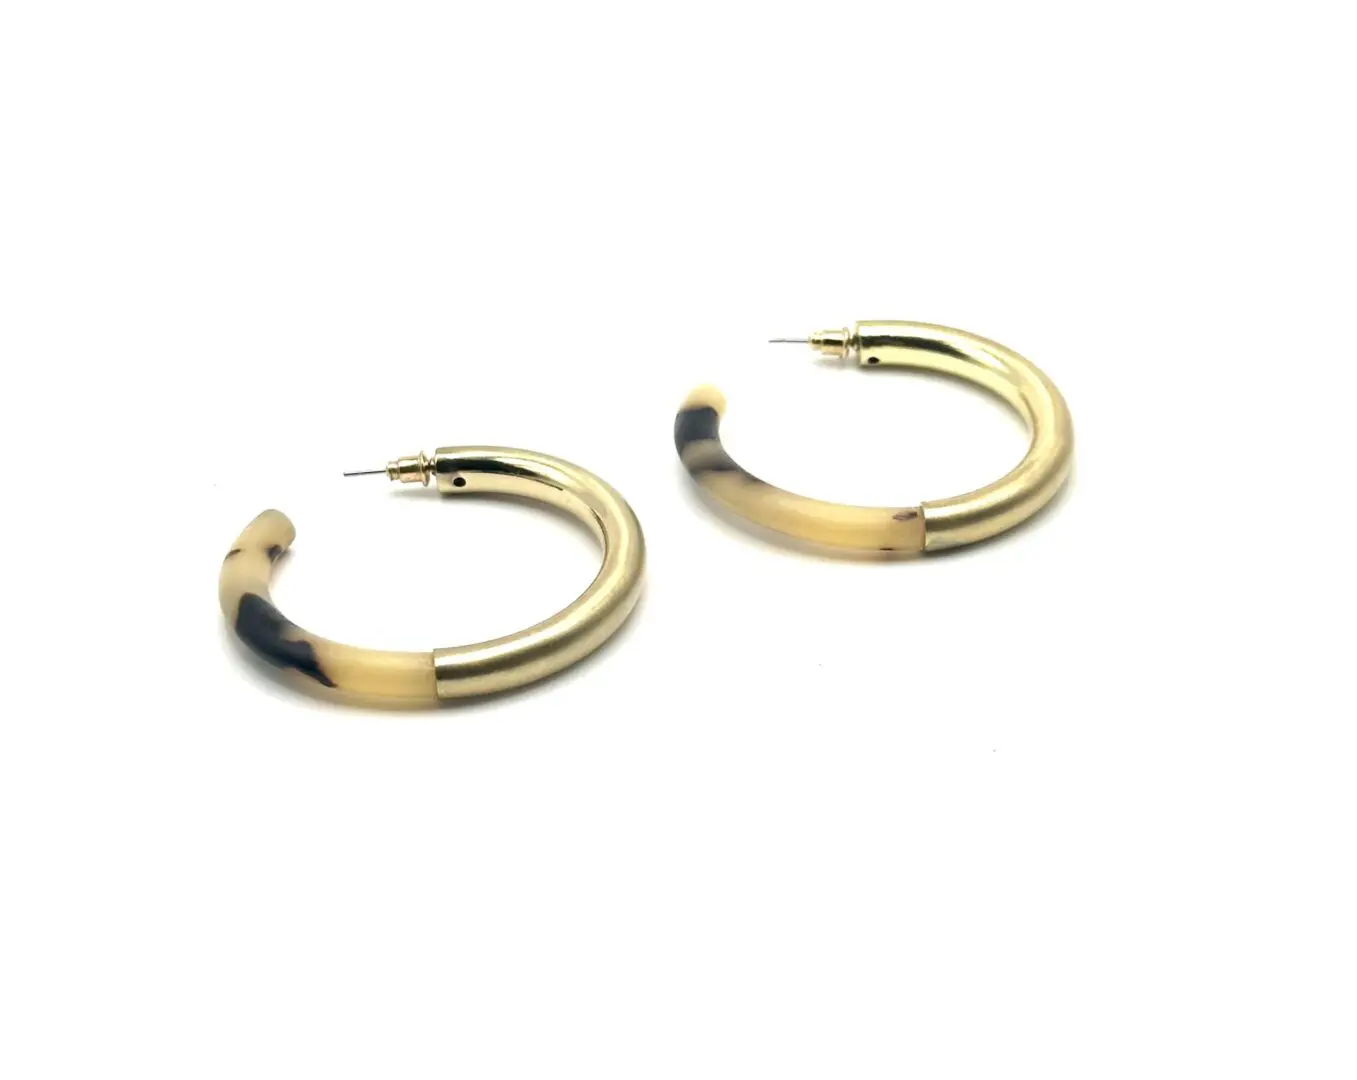 A pair of gold and black hoop earrings.